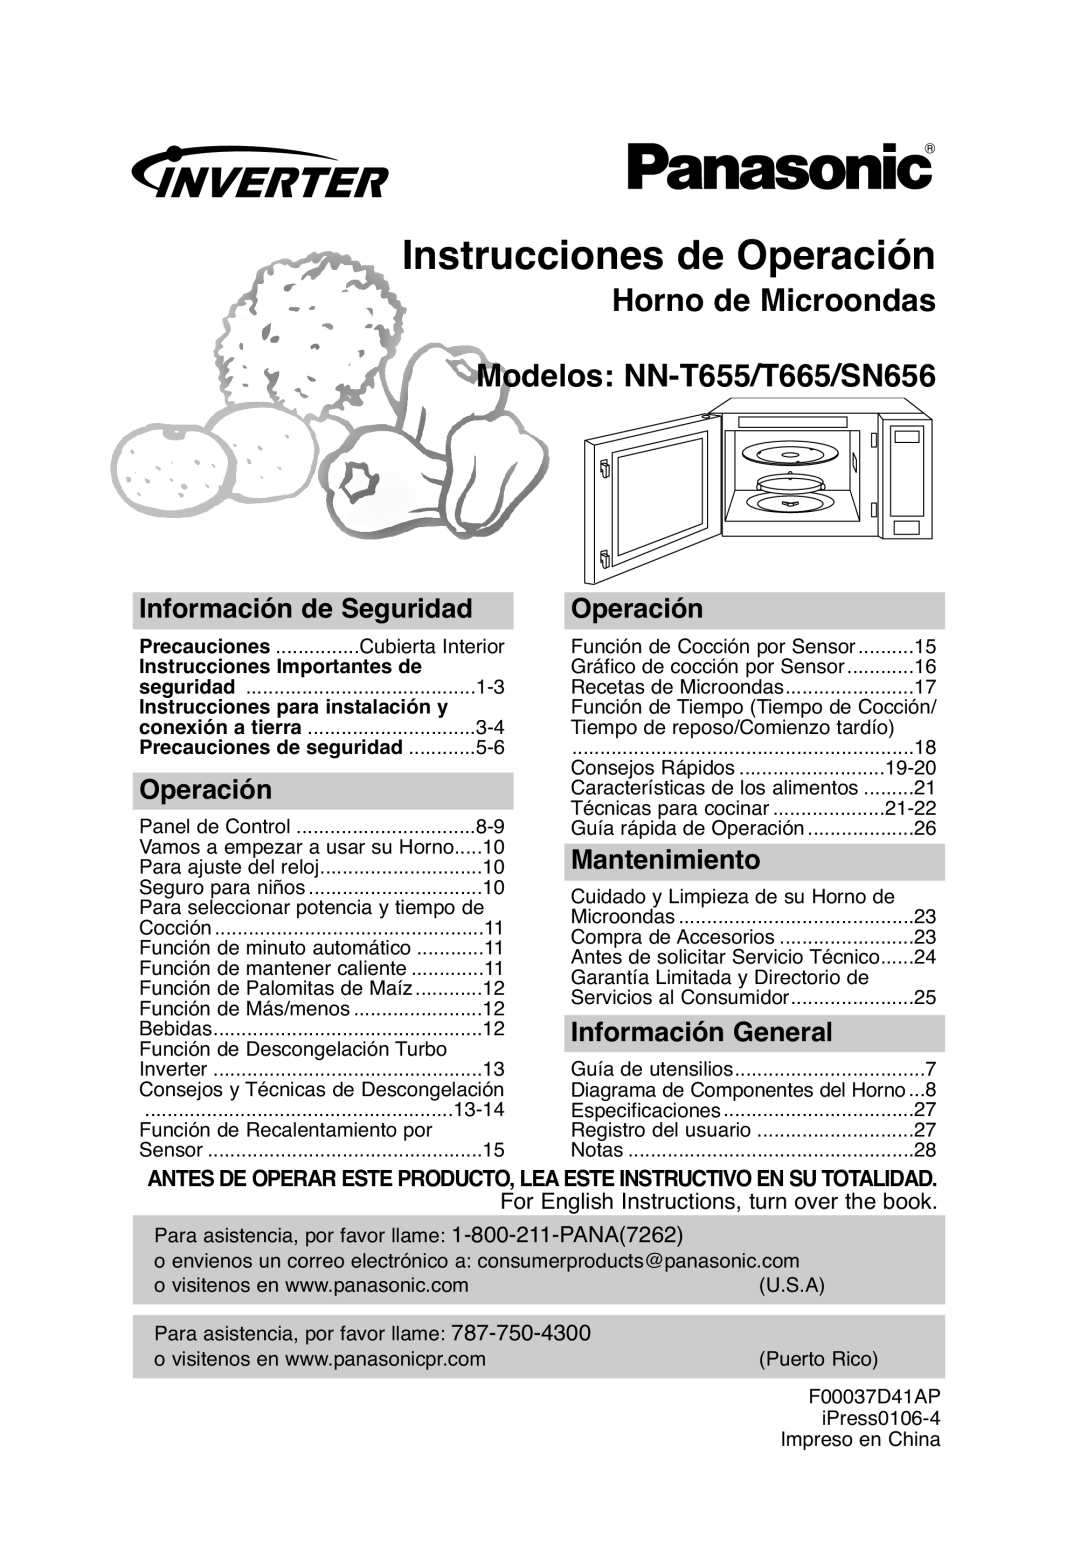 Panasonic NN-T665 Instrucciones de Operación, Horno de Microondas Modelos NN-T655/T665/SN656, Información de Seguridad 